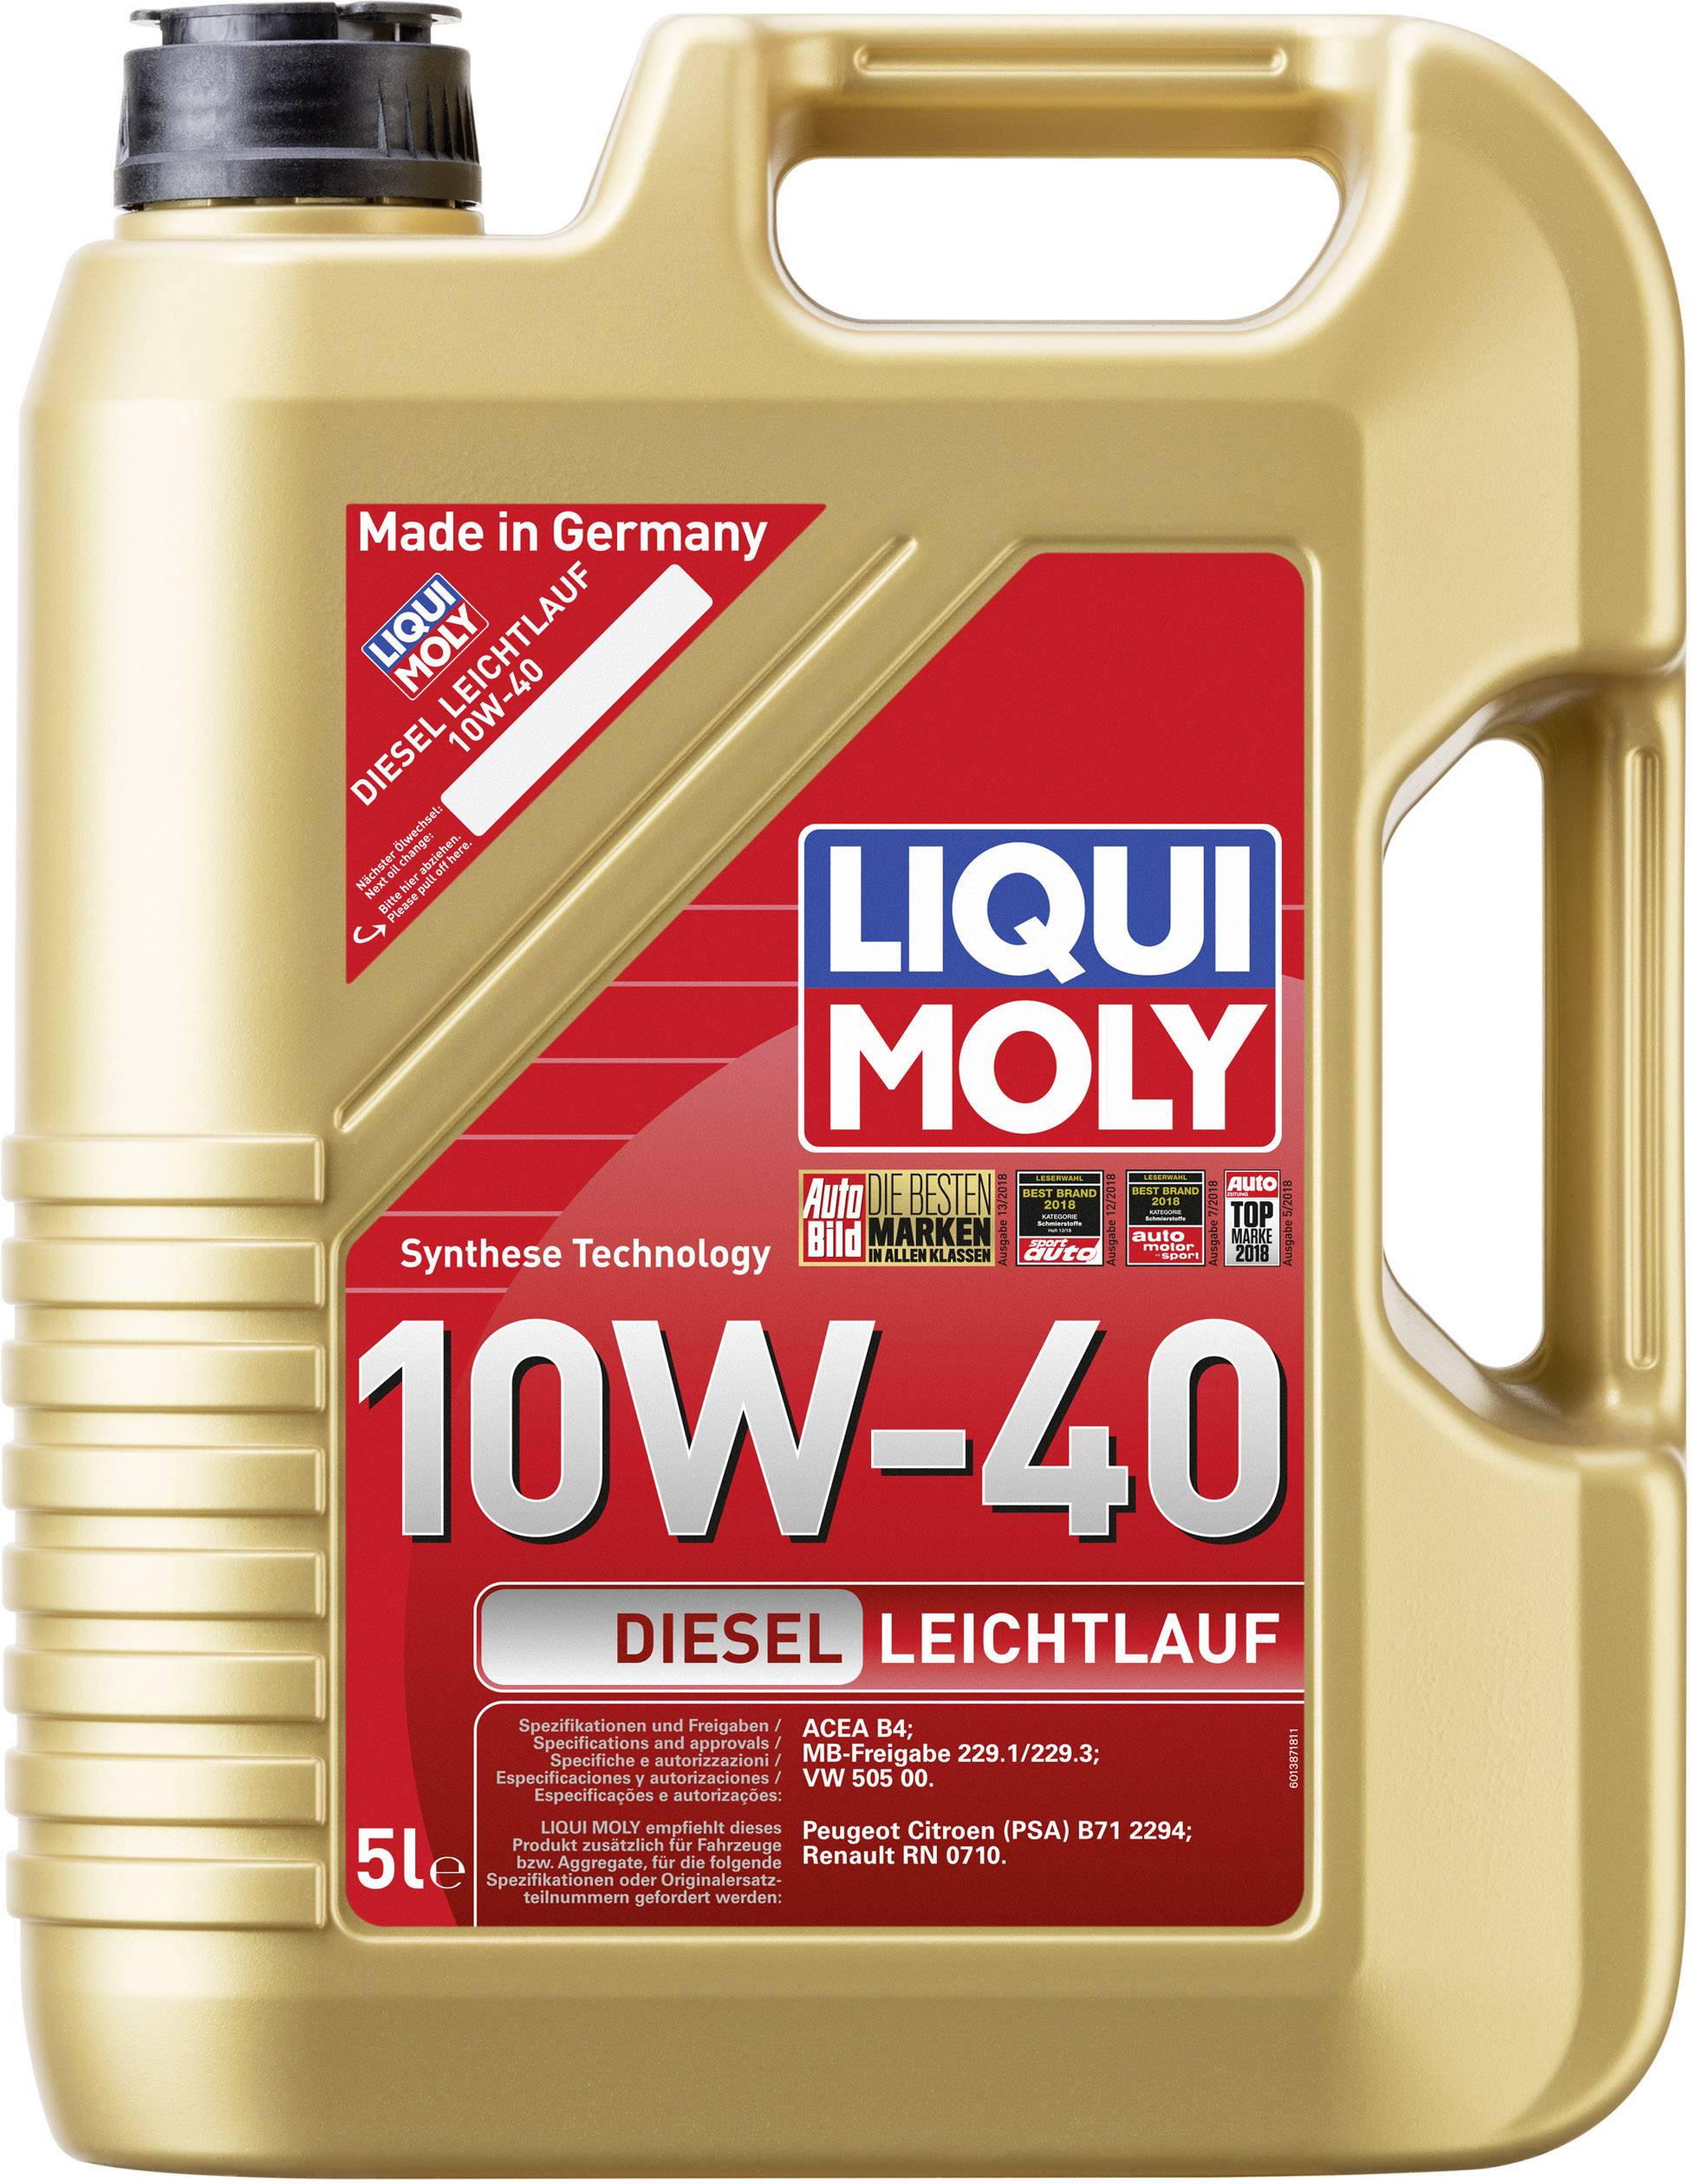 Liqui Moly Diesel Leichtlauf 10W-40 1387 Leichtlaufmotoröl 5 l kaufen